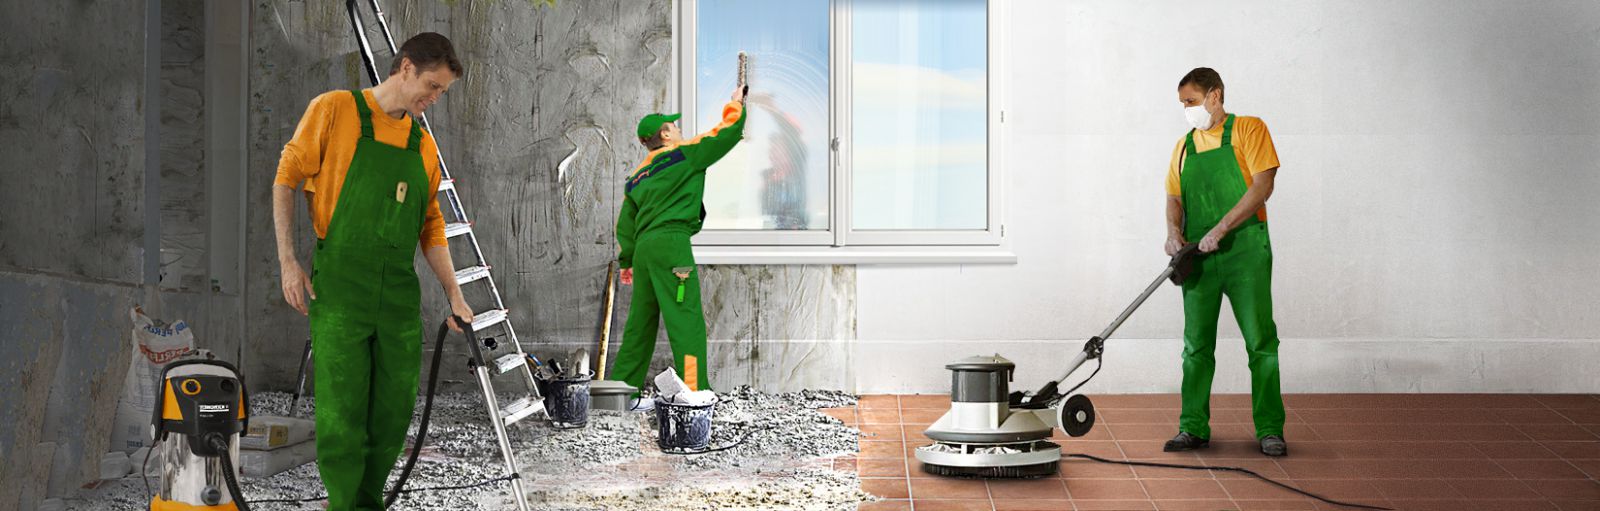 Как убрать квартиру после ремонта своими руками? уборка квартиры после ремонта пошагово: с чего начать и как быстро закончить